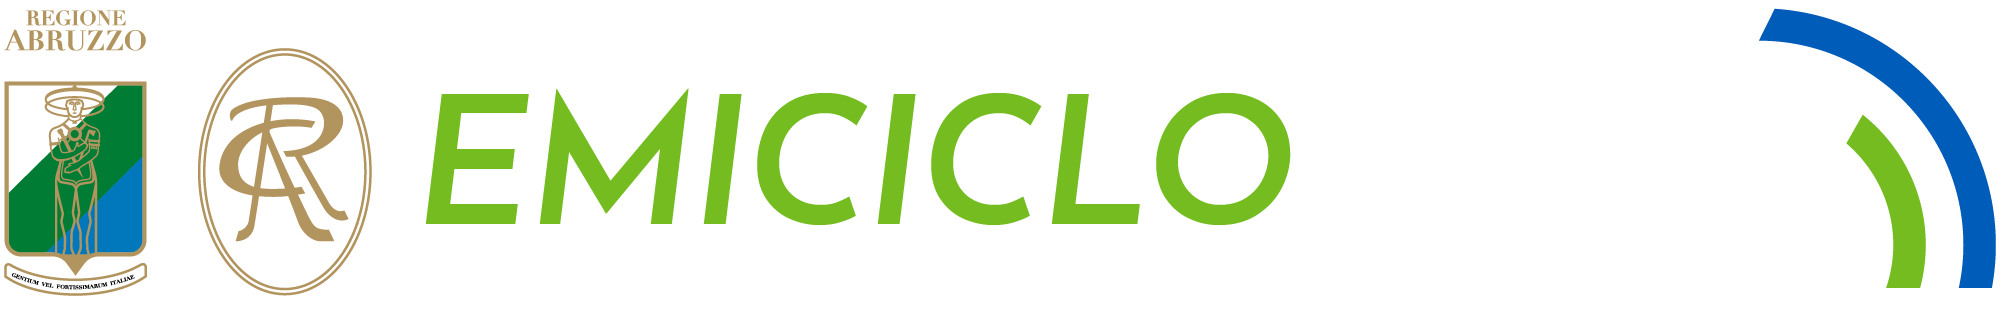 Emiciclo News - ACRA - Agenzia di stampa quotidiana del Consiglio Regionale dell'Abruzzo